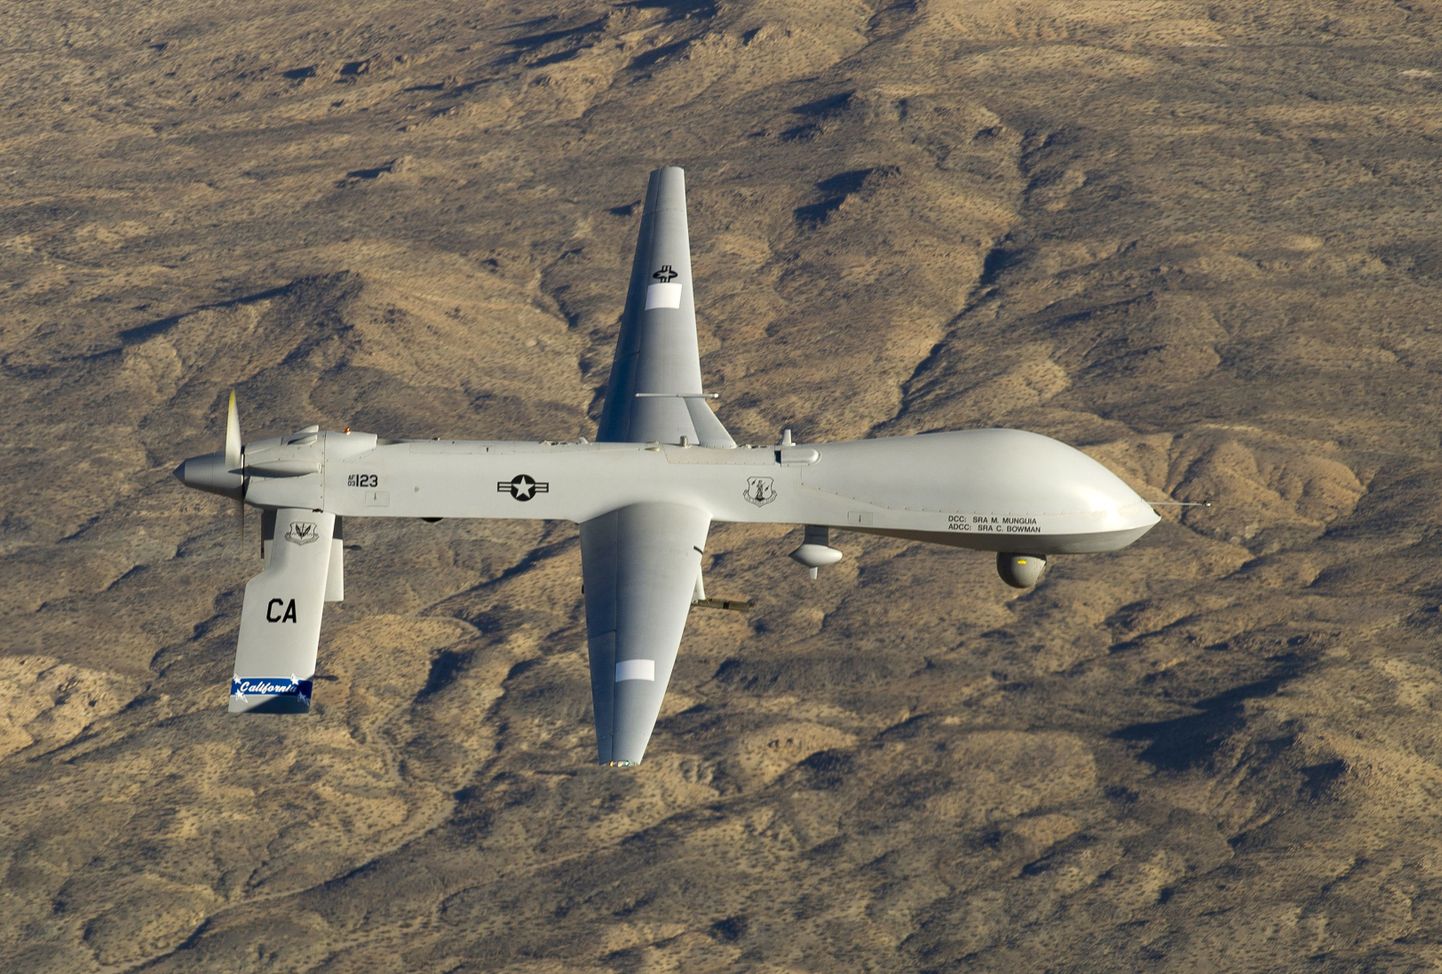 Ameerika Ühendriikide droon MQ-1 Predator.